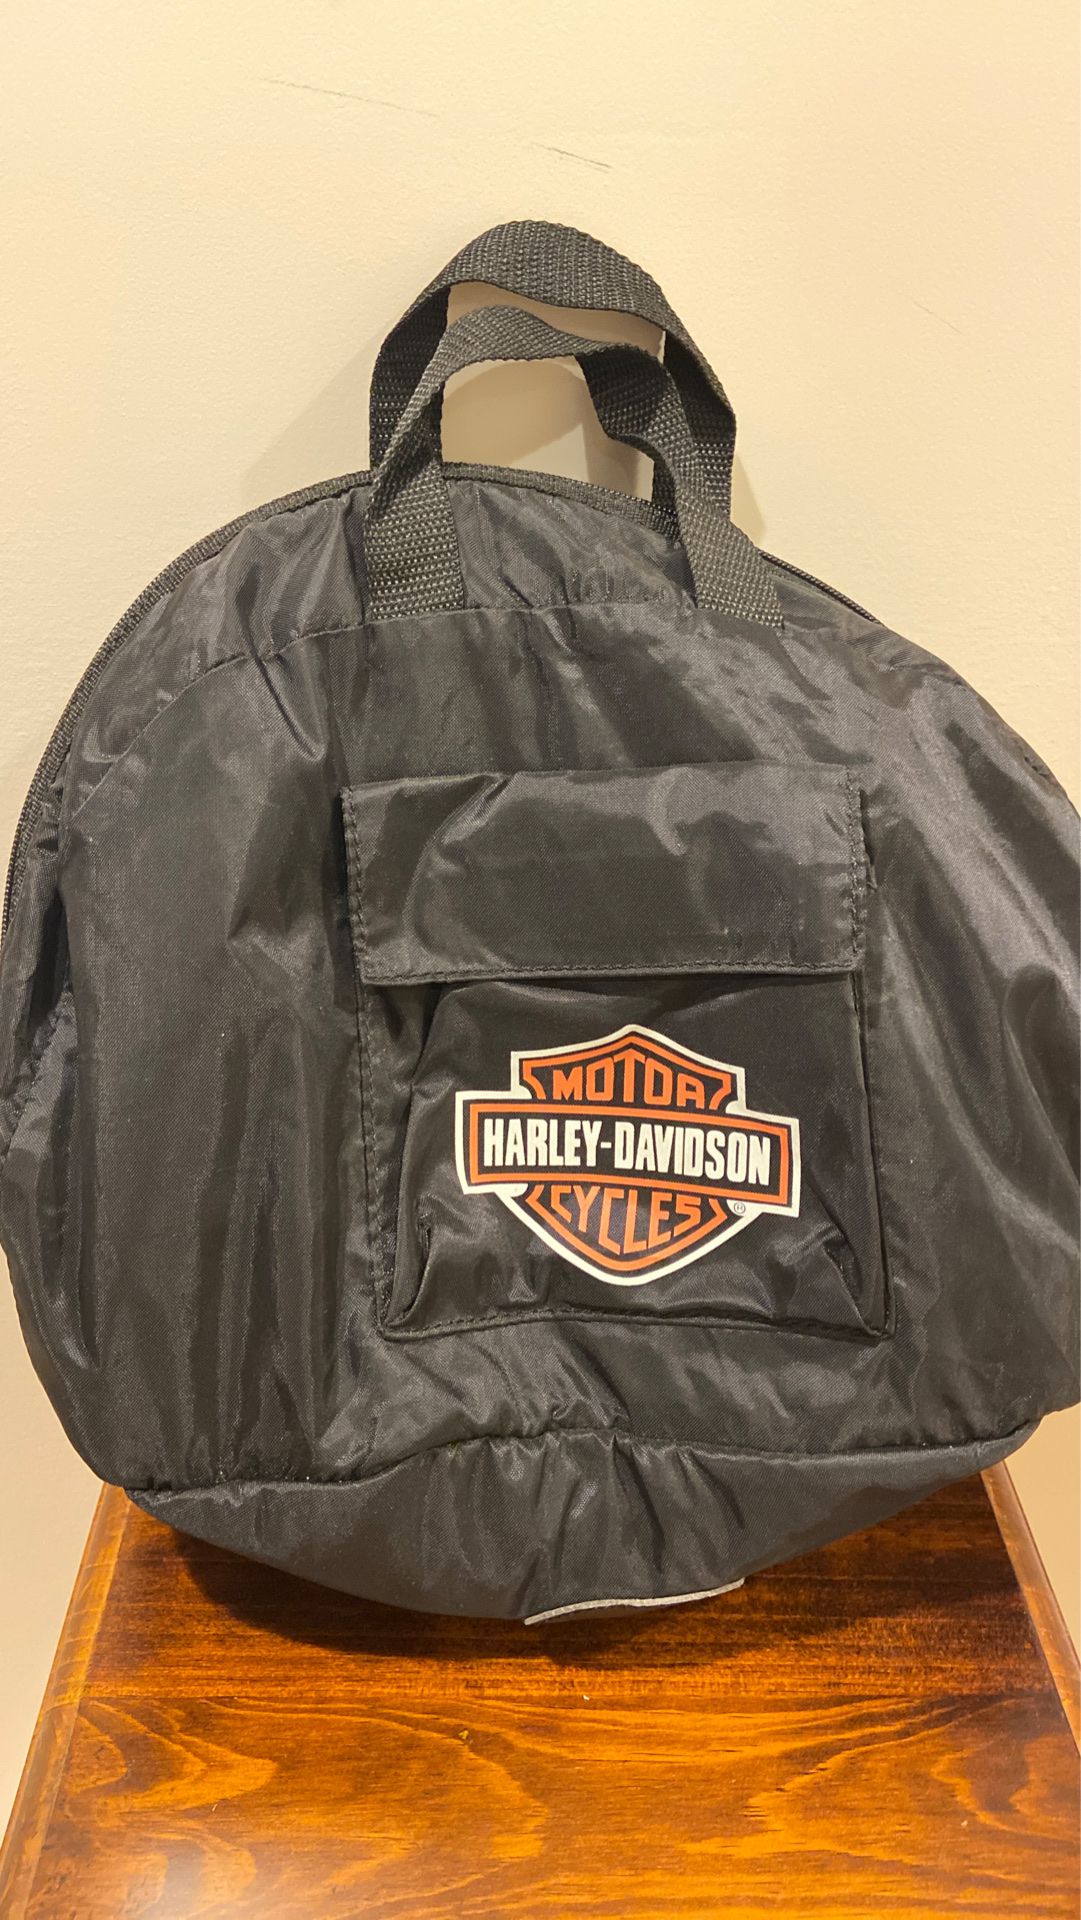 Harley Davidson Motorcycle Helmet Bag